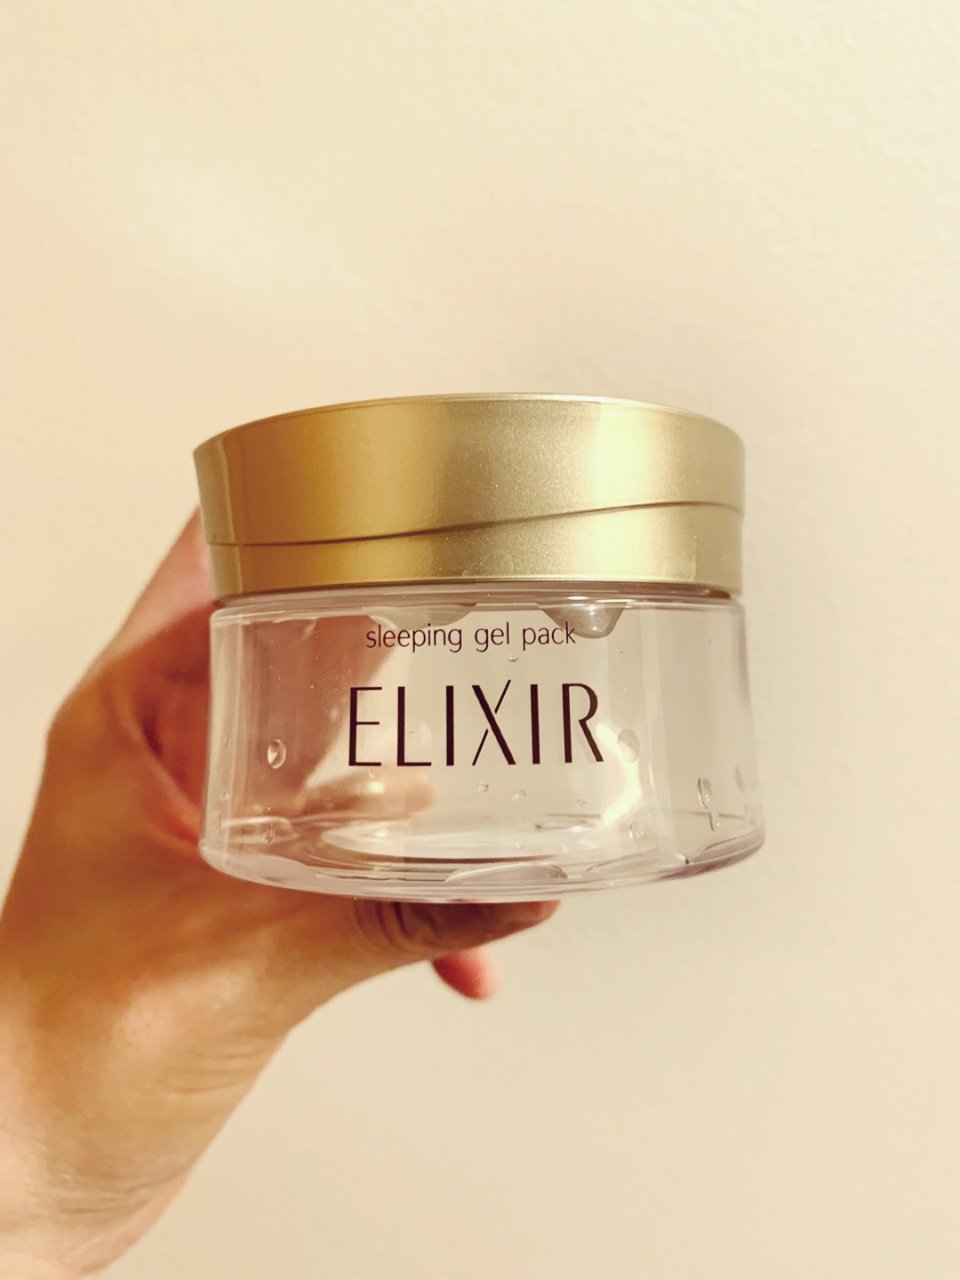 ELIXIR 睡眠面膜,Elixir,睡眠面膜